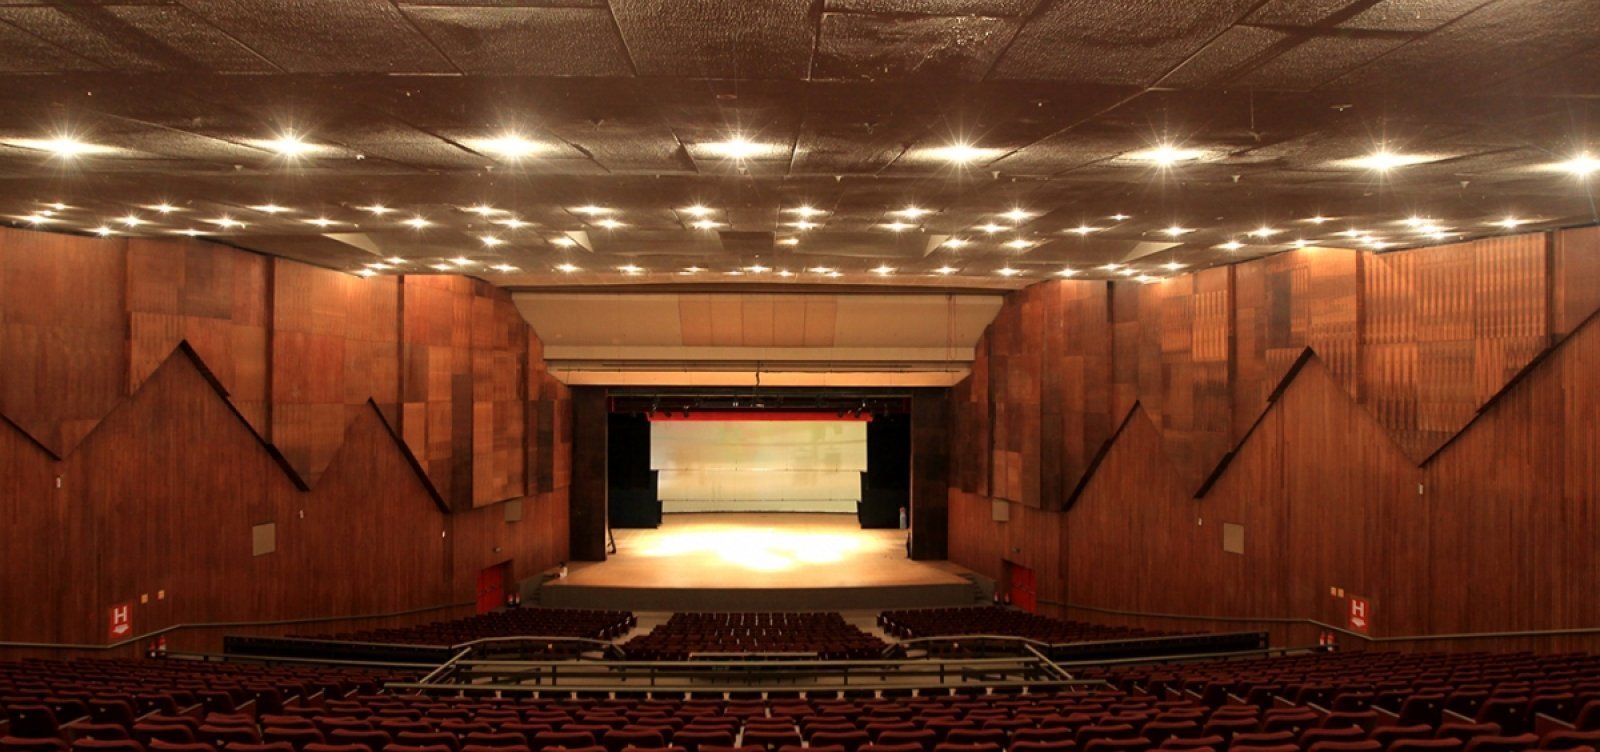 Teatro Castro Alves será entregue reformado em 2026, diz governo